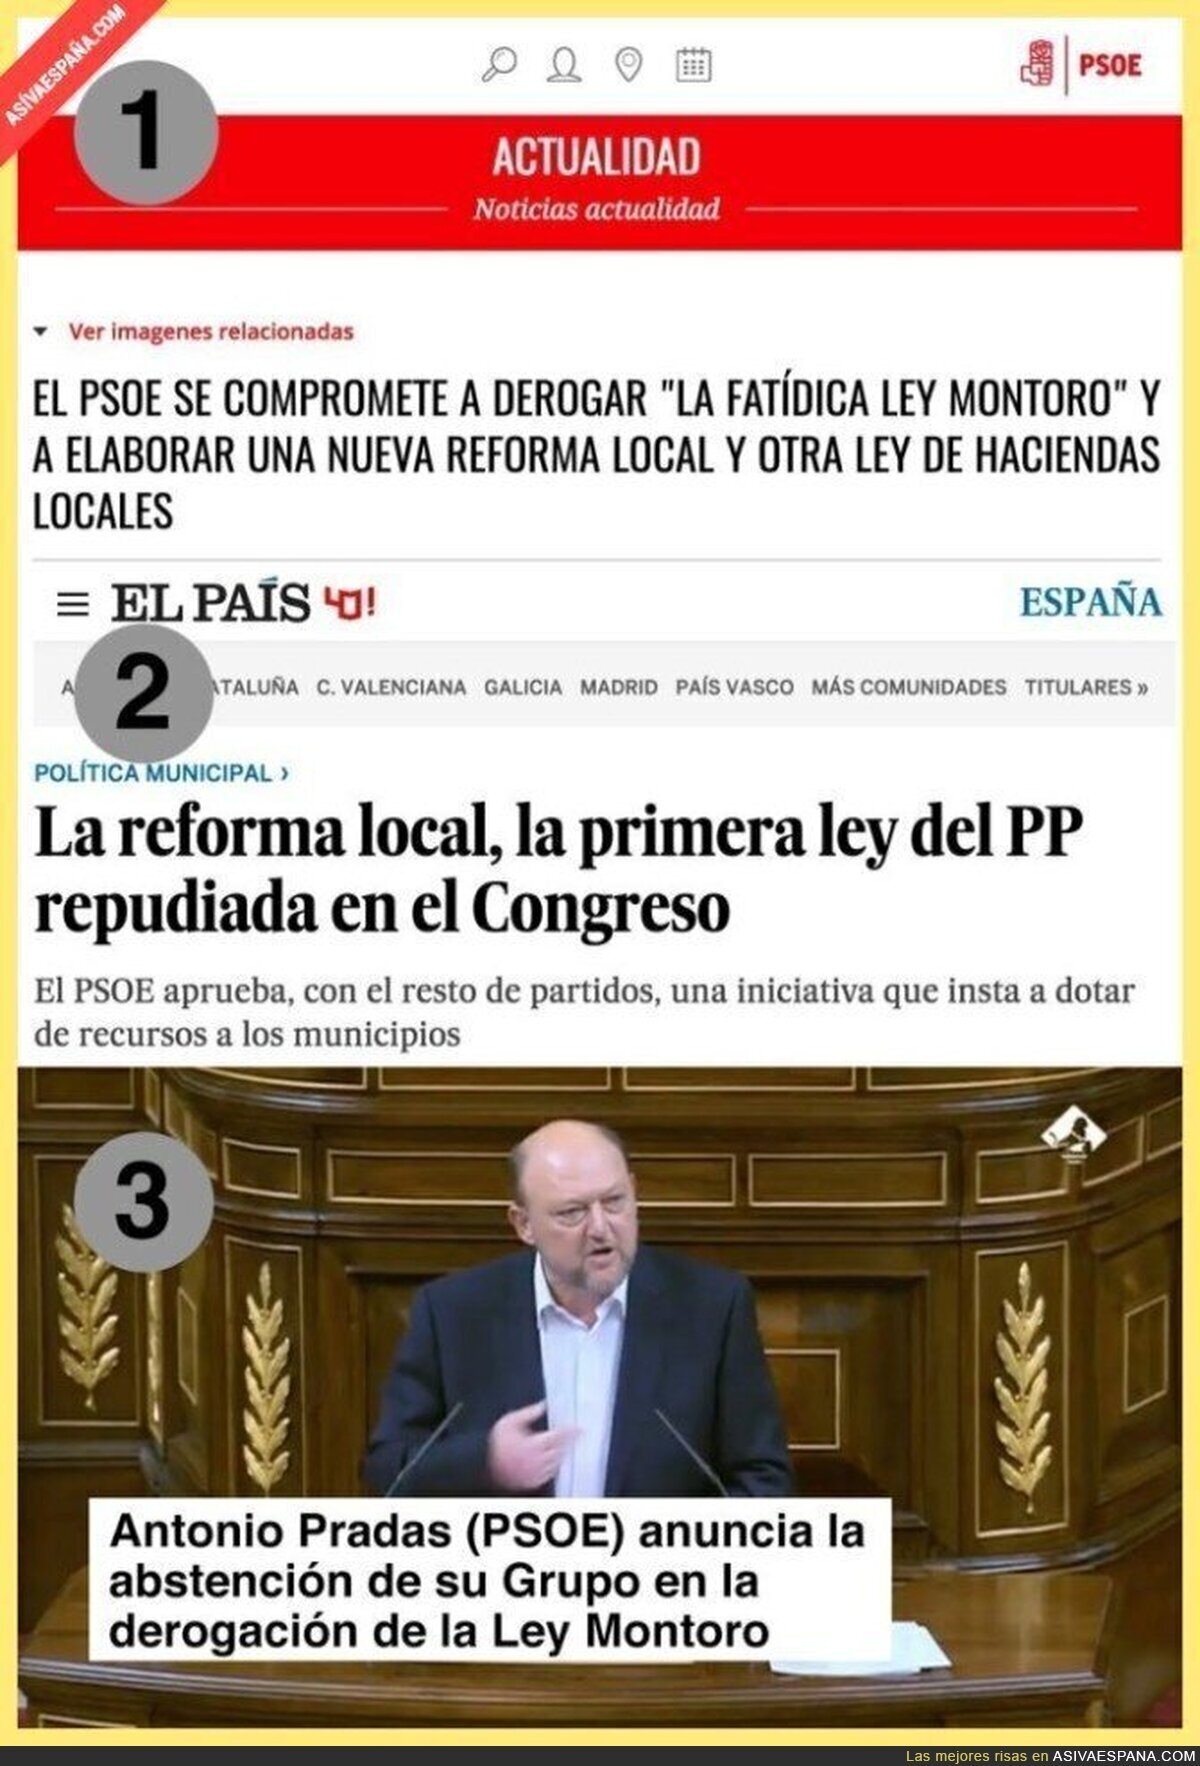 El PSOE se vuelve a retratar haciendo lo contrario de lo prometido en campaña con la Ley Montoro